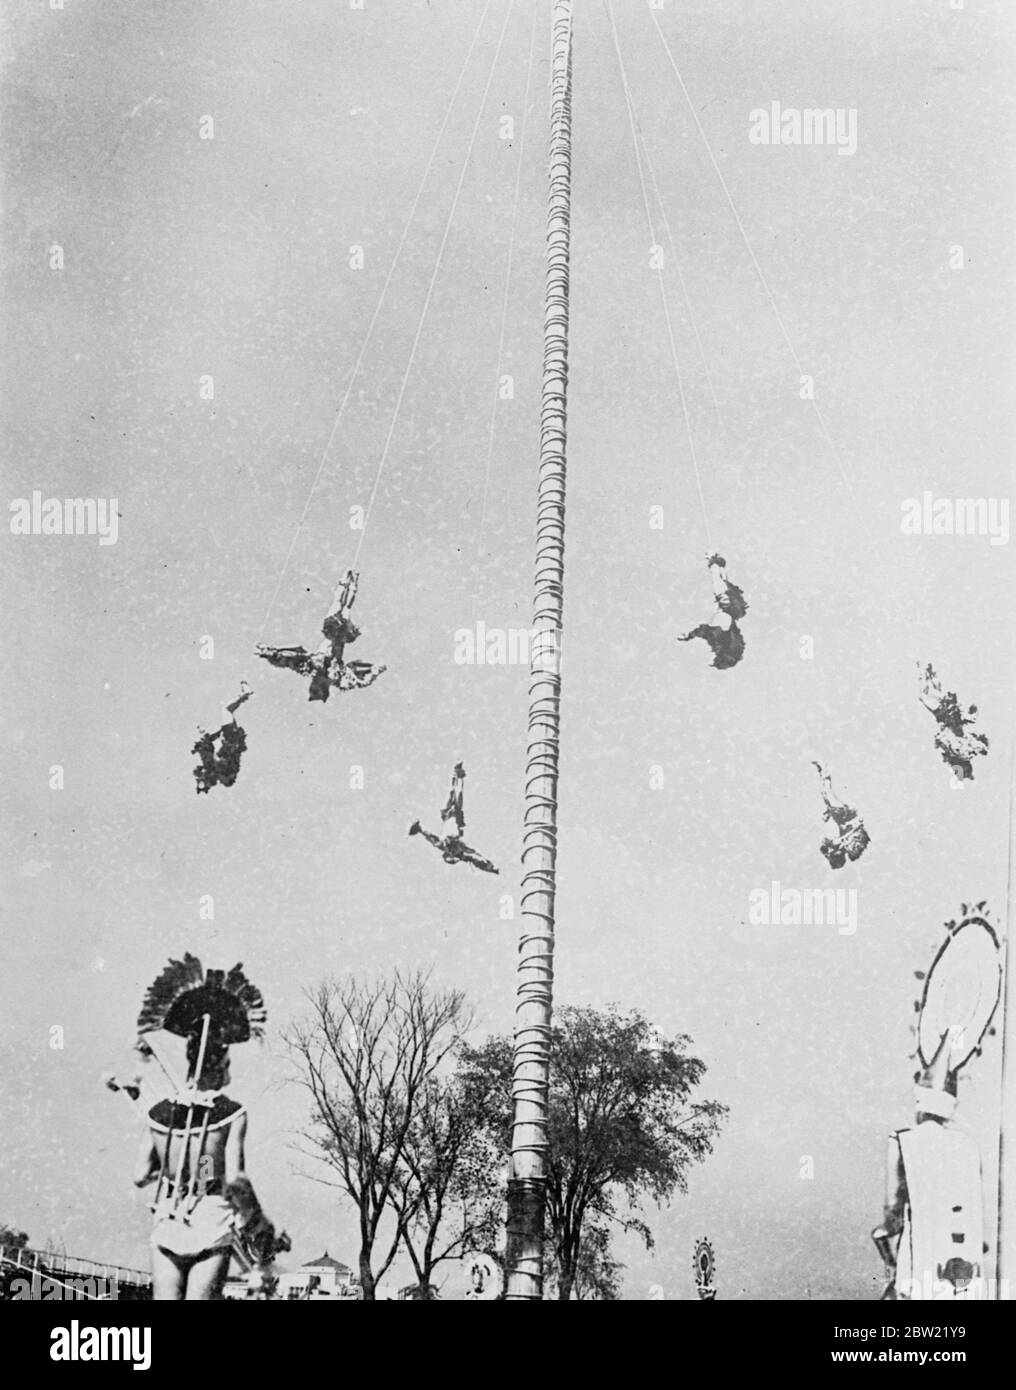 Der Höhepunkt des spektakulären Flying Pole Dance der Otomien Indianer aus Mexiko. In einer spektakulären Ausstellung im Charter Jubilee Festival in Chicago, die von einer Reihe von Indianern aus Pahuatlin, Mexiko, gegeben wurde. Sechs Indianer, die mythische Figuren darstellen, klettern auf die Spitze des 50 Fuß hohen Pfeils und tanzen auf einer kleinen Drehplattform. September 1937. Stockfoto